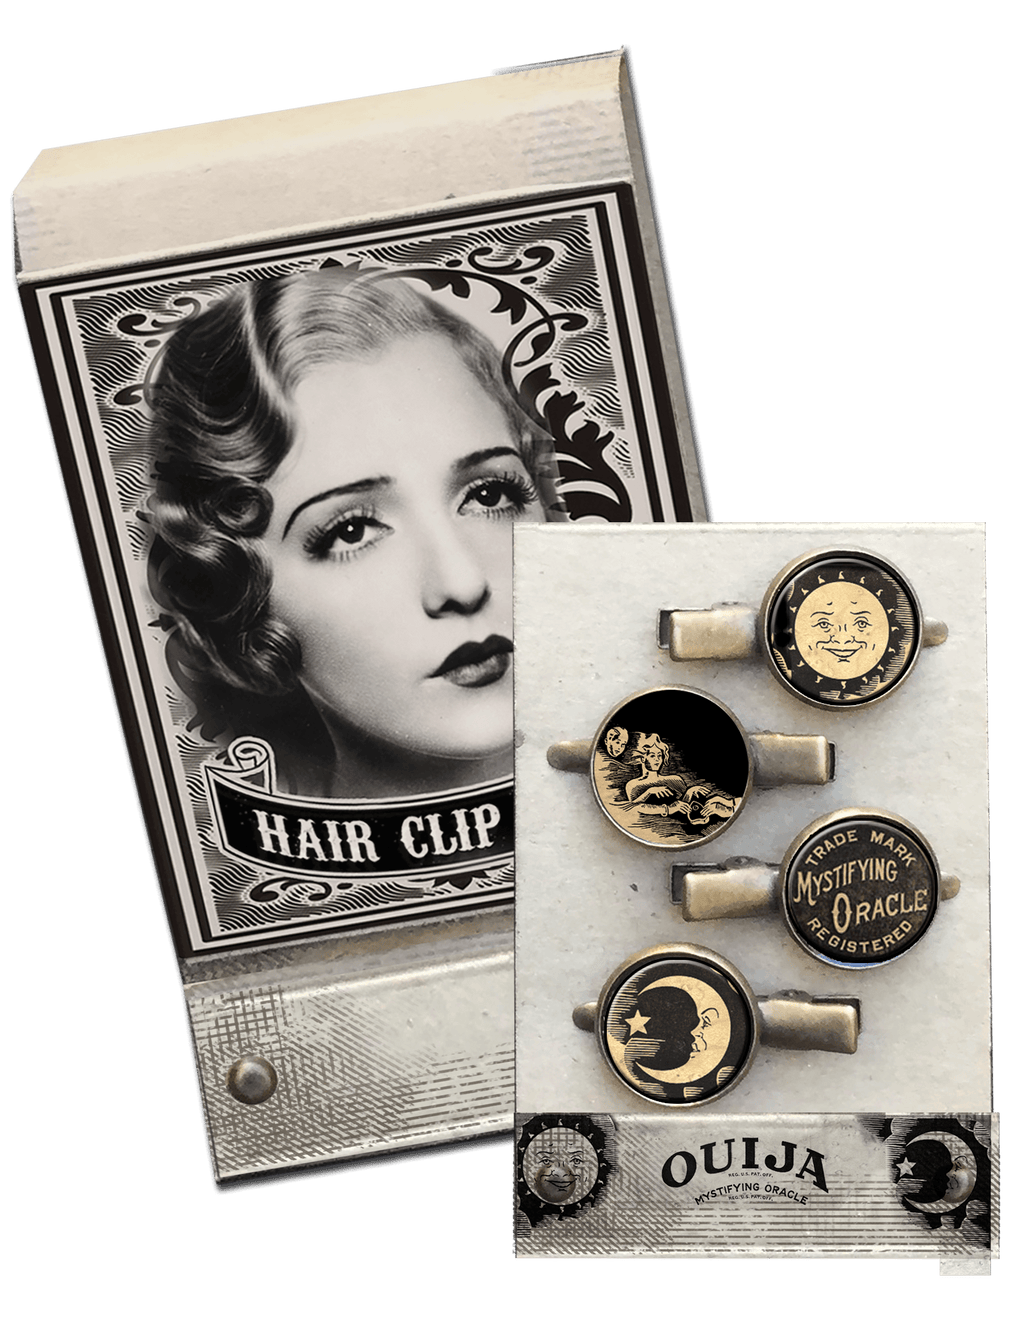 Ouija Match Book Hair Clips - Se7en Deadly